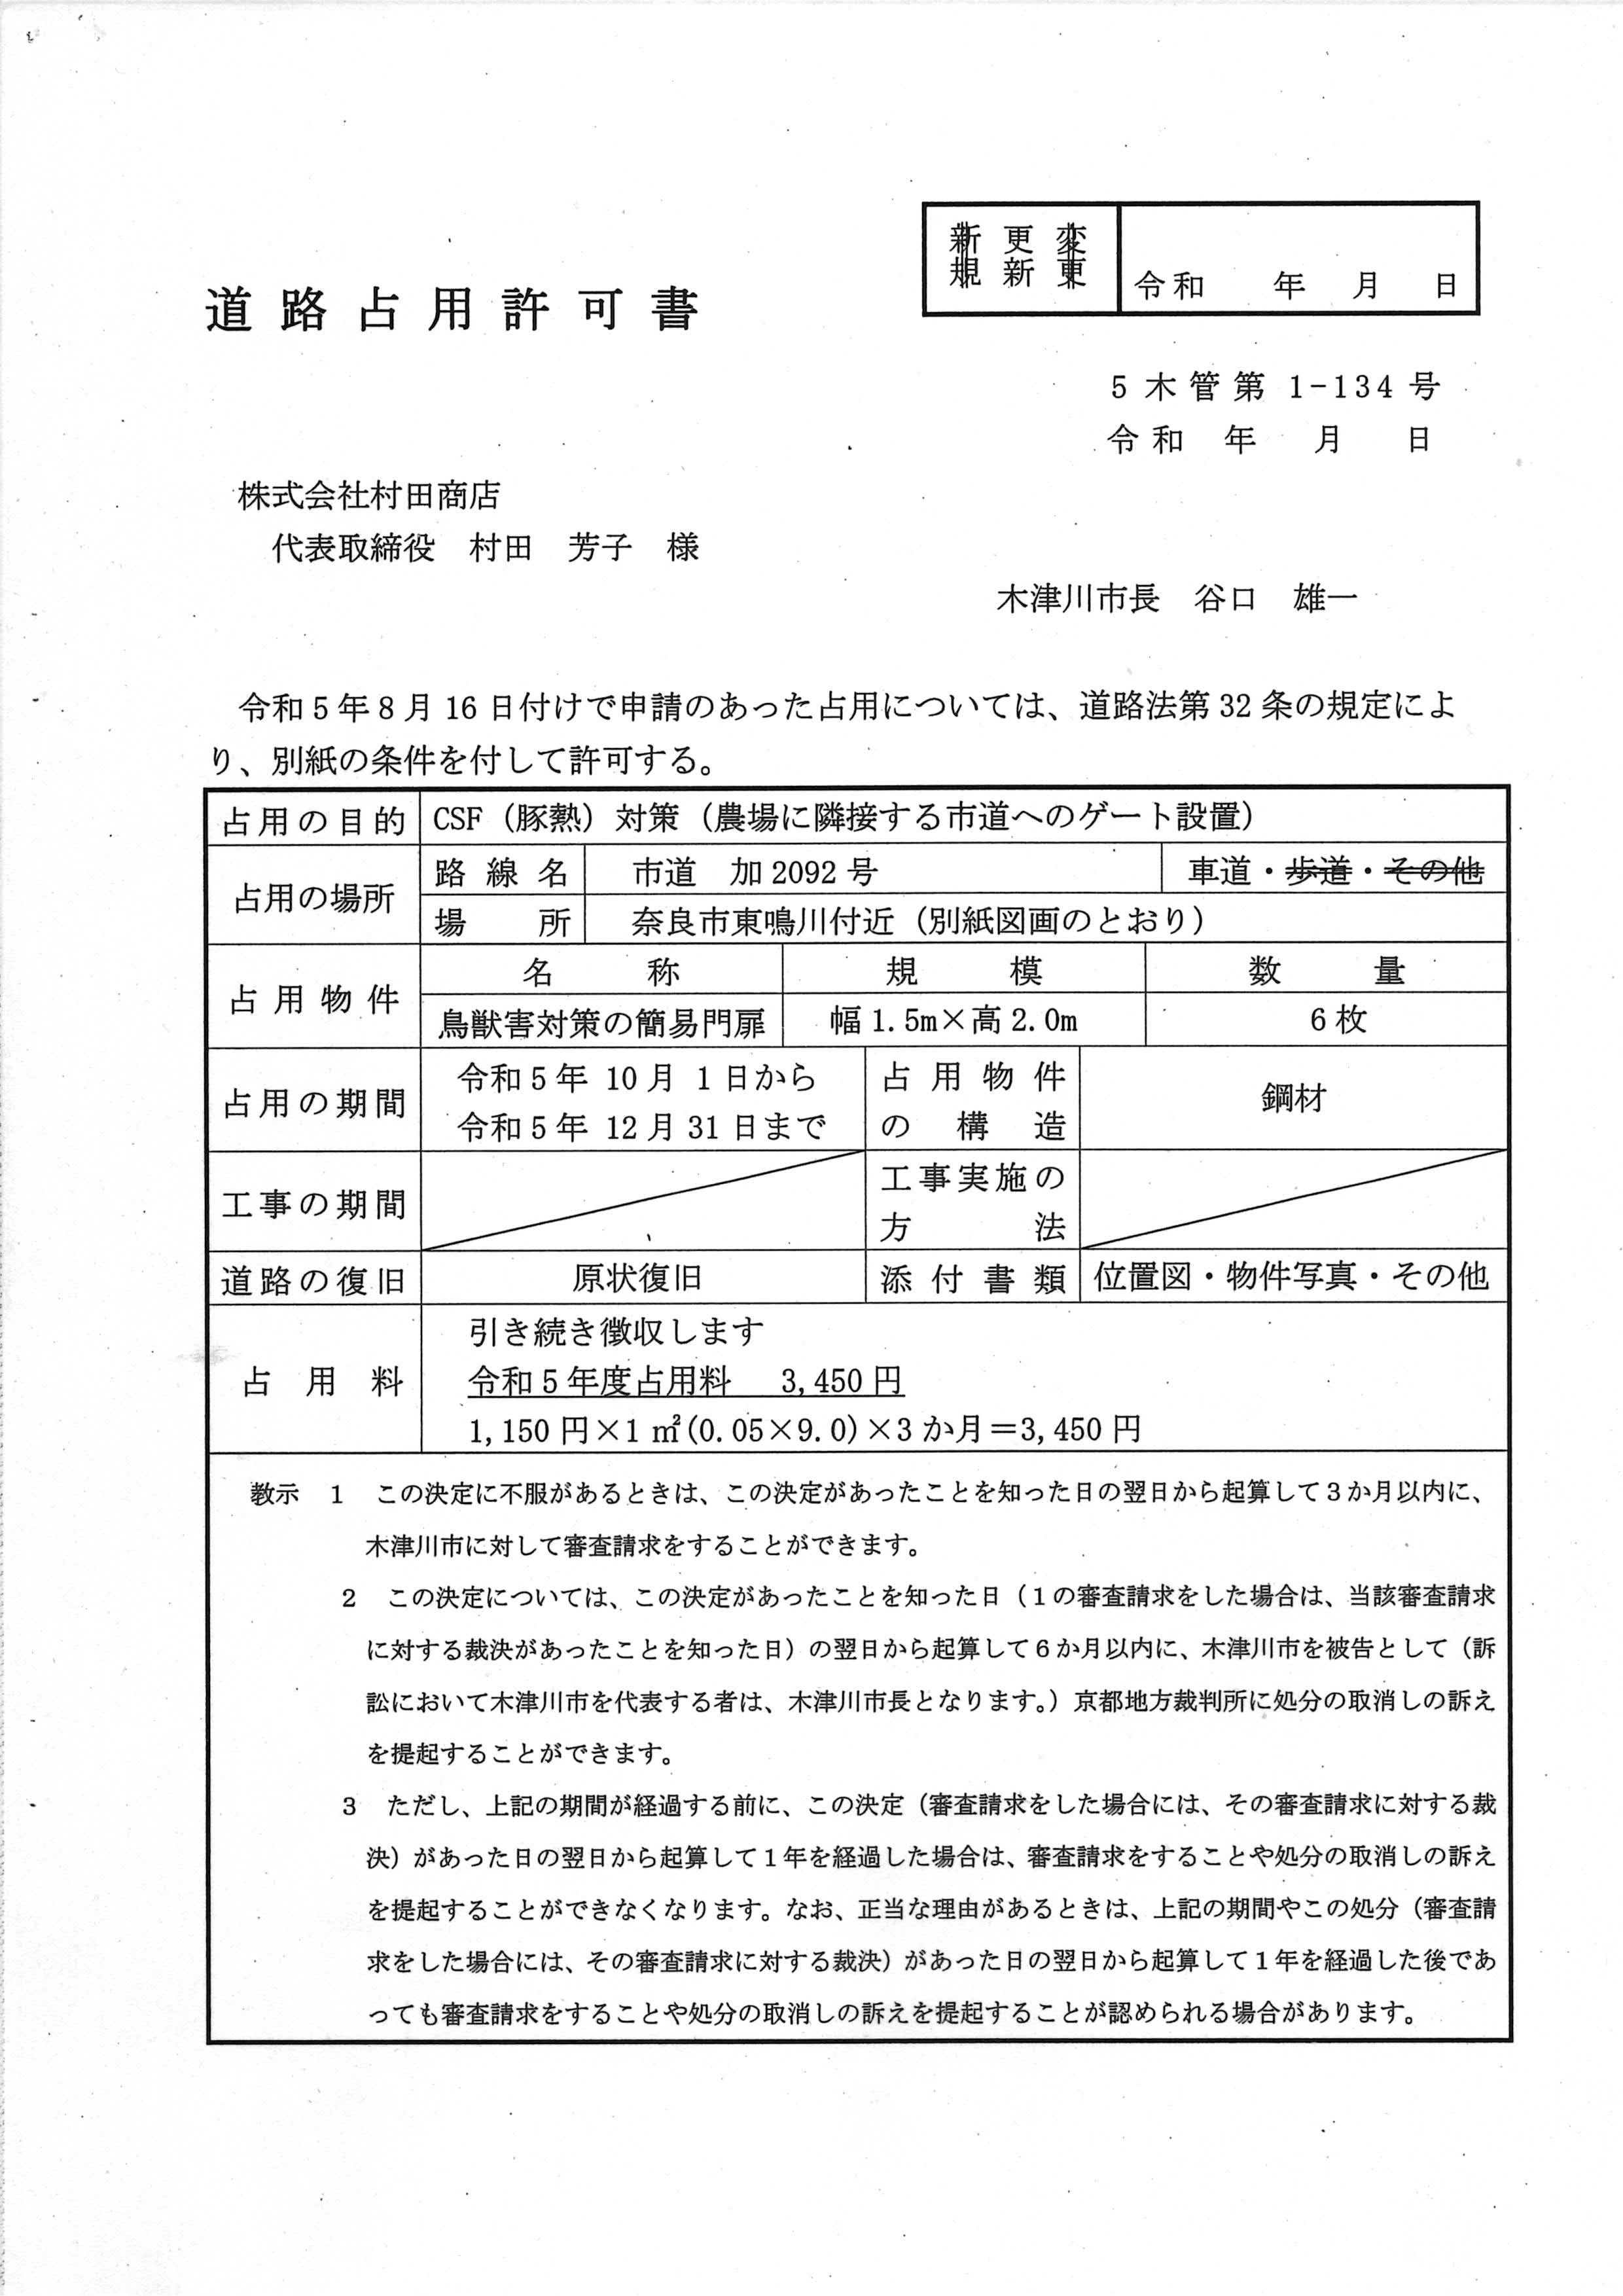 令和5(2023)年9月25日-(株)村田商店に対する市道占用の許可更新に係る協議-04